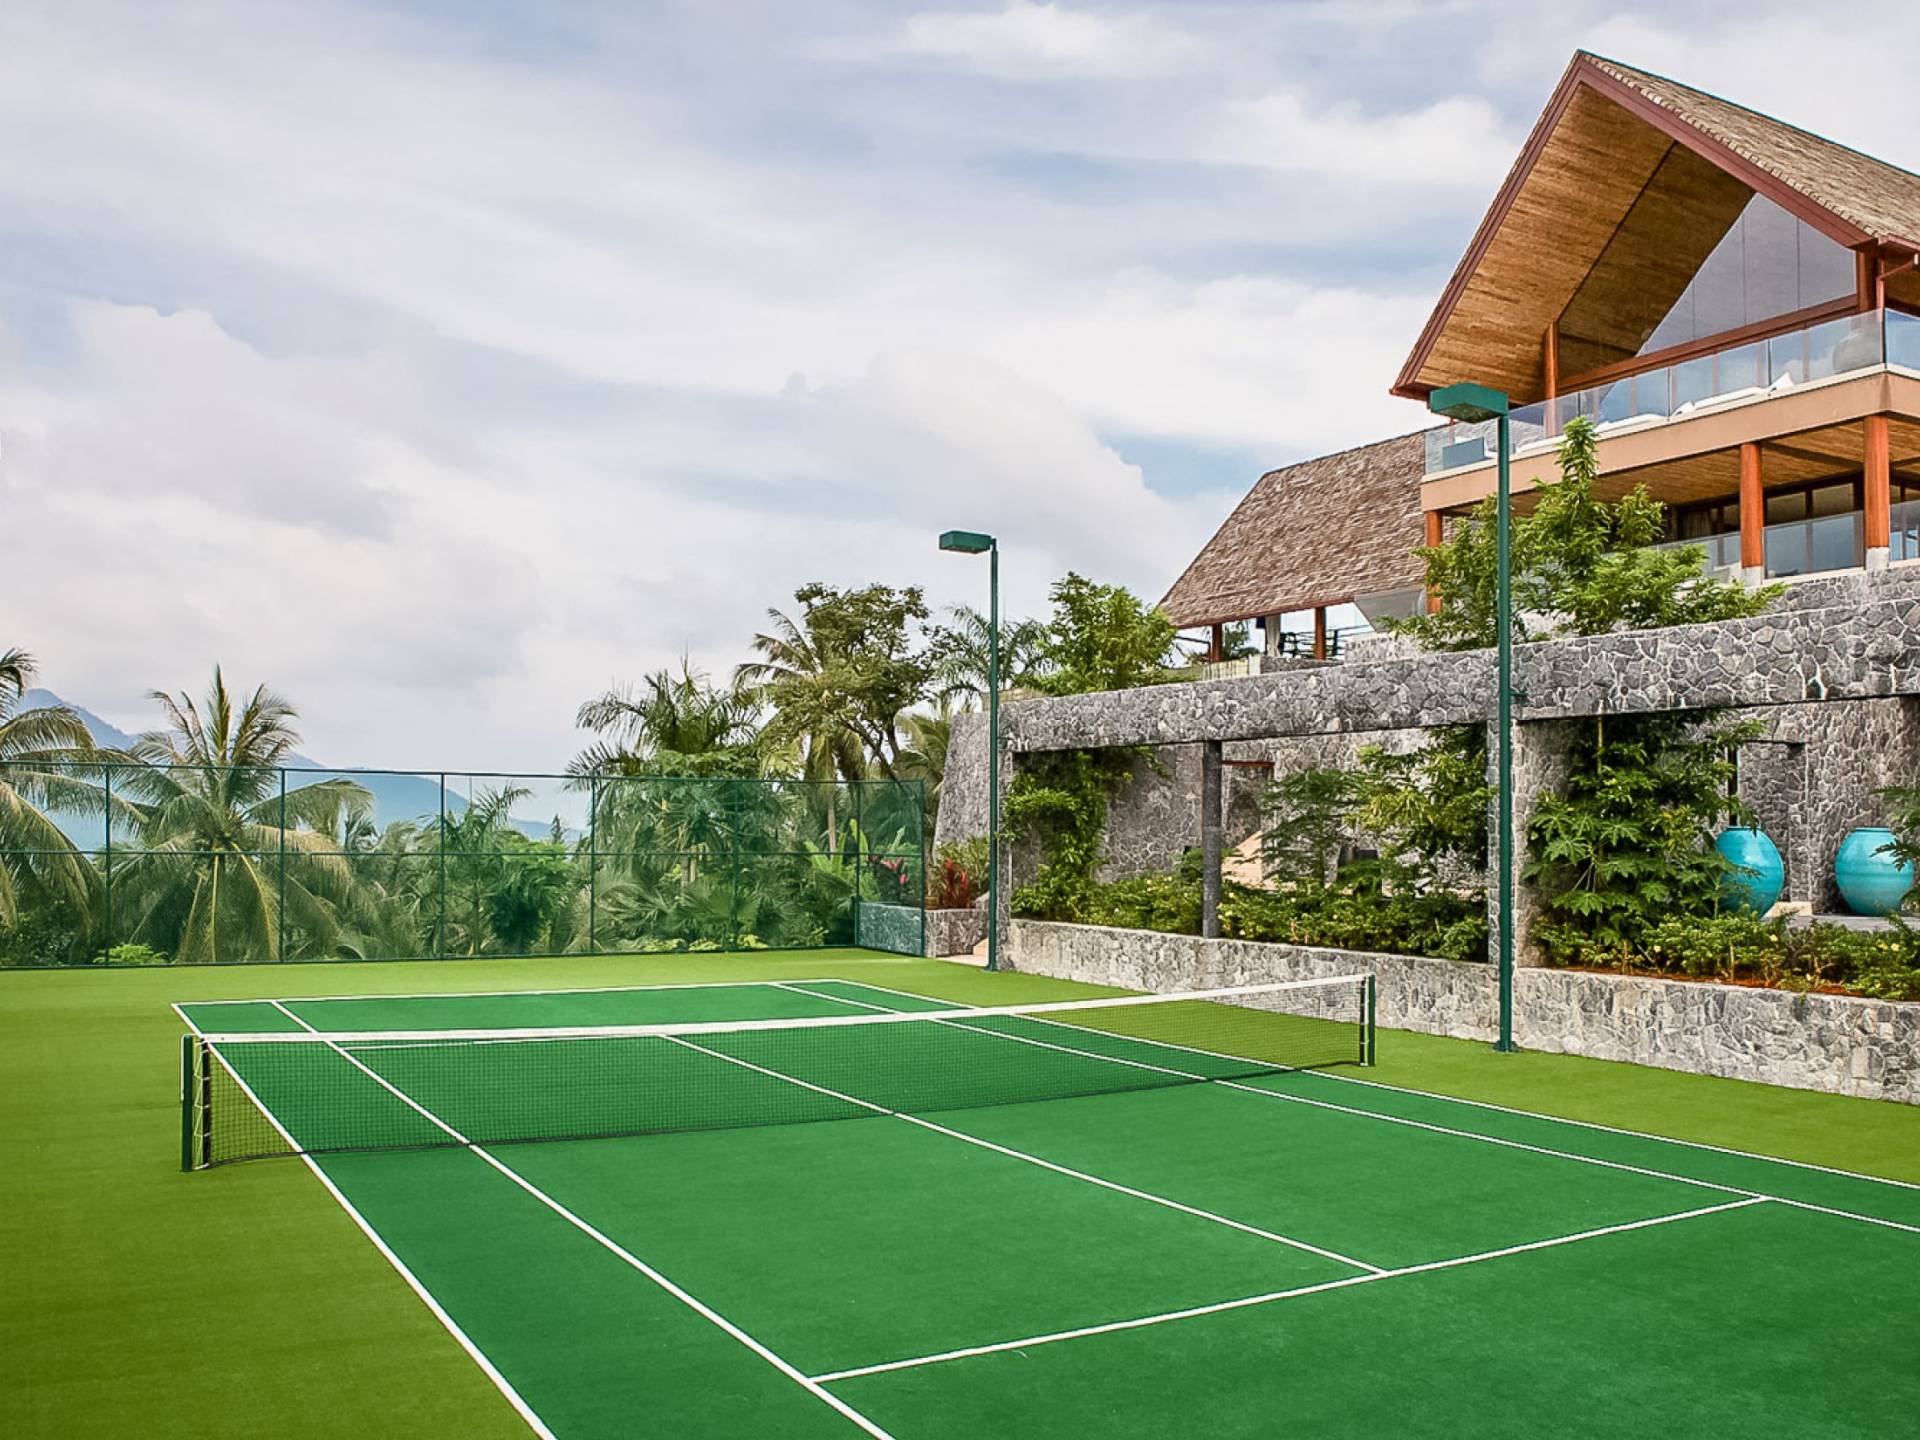 Теннисный корт под. Copacabana Palace теннисный корт. Теннисные корты в Куала Лумпур. Теннисный корт отель Небуг. TUI Blue Palm Garden теннисный корт.